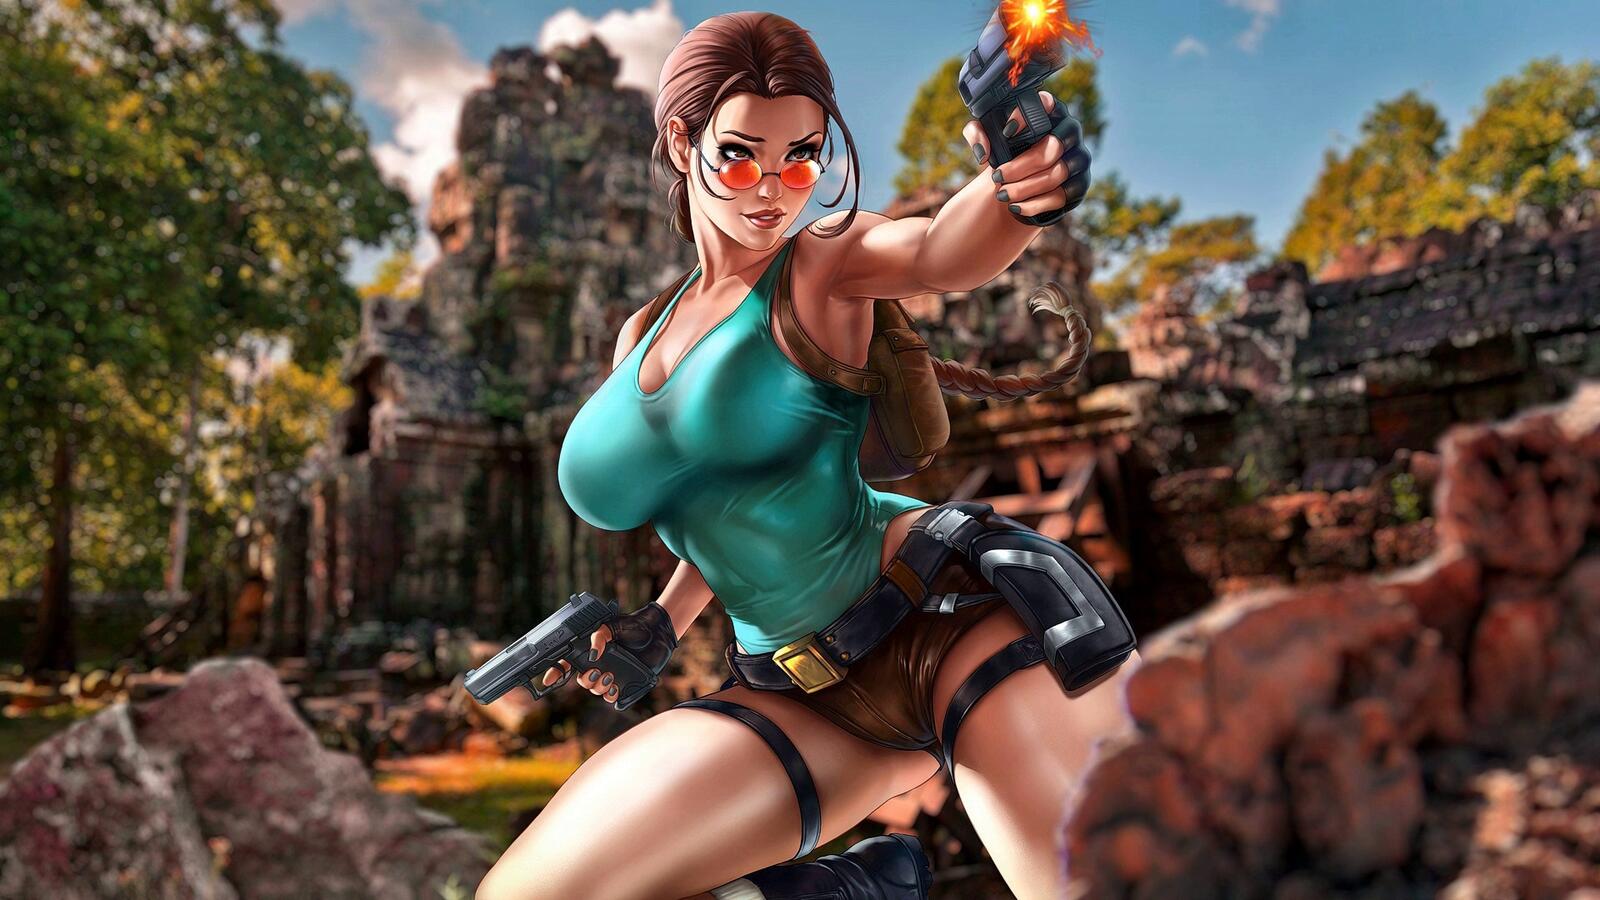 Free photo Cartoon Lara Croft shoots a gun.